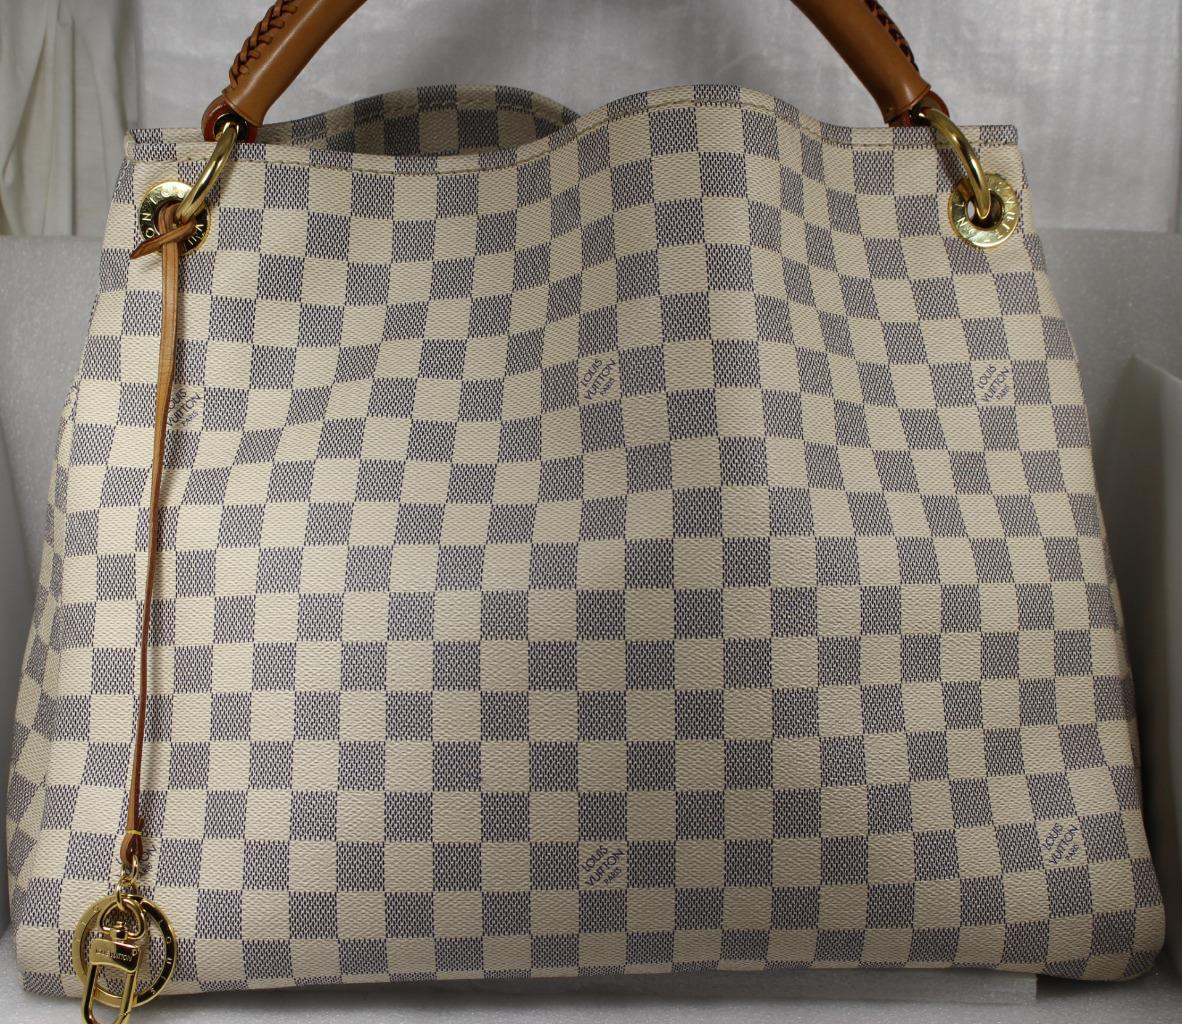 100% Authentic Louis Vuitton Artsy MM Damier Azur Canvas Hobo Bag | eBay